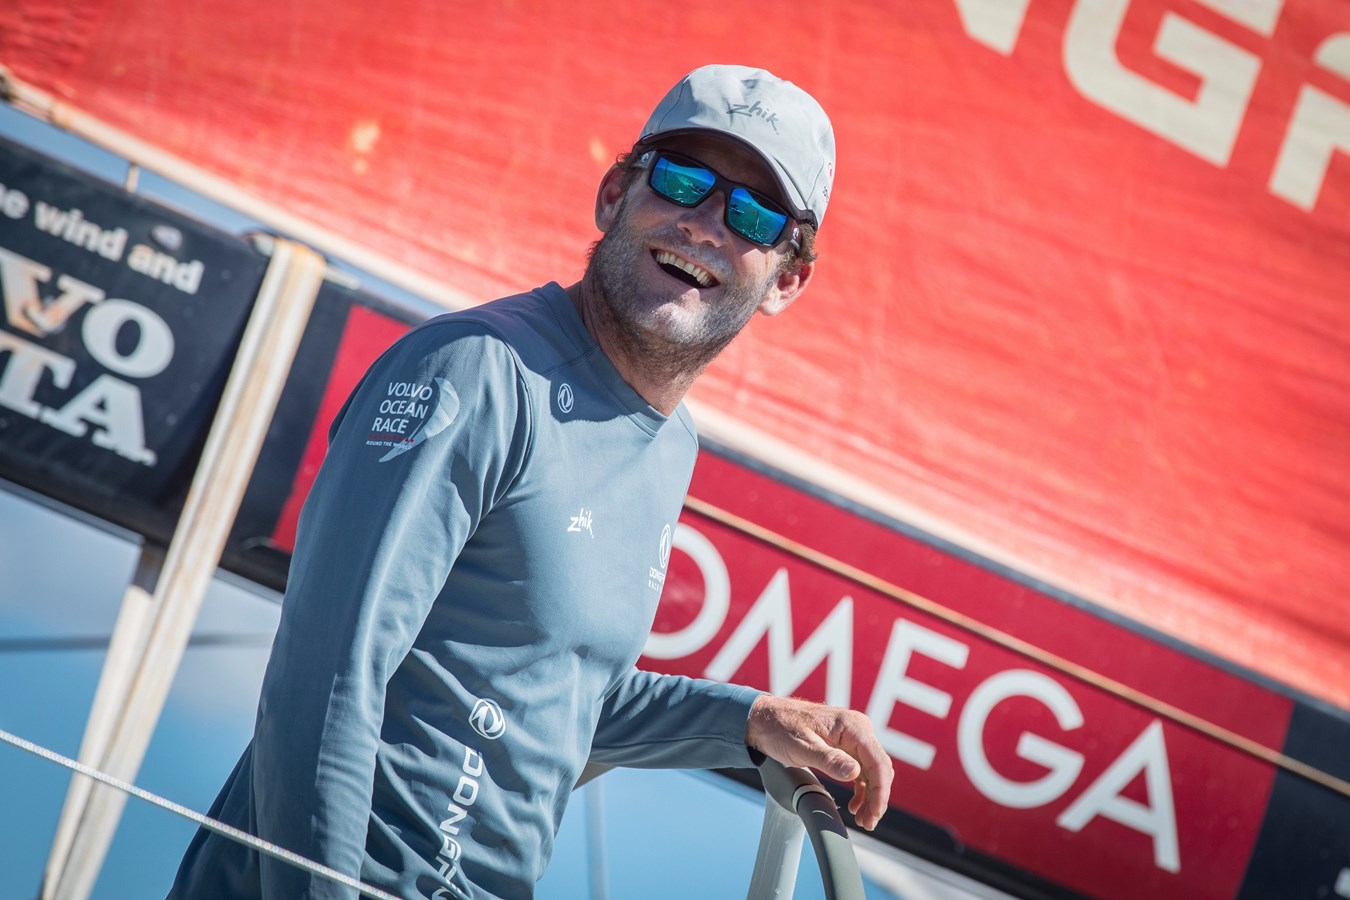 Dongfeng Race Team vainqueur de la Volvo Ocean Race à l’extrême bout du suspense !